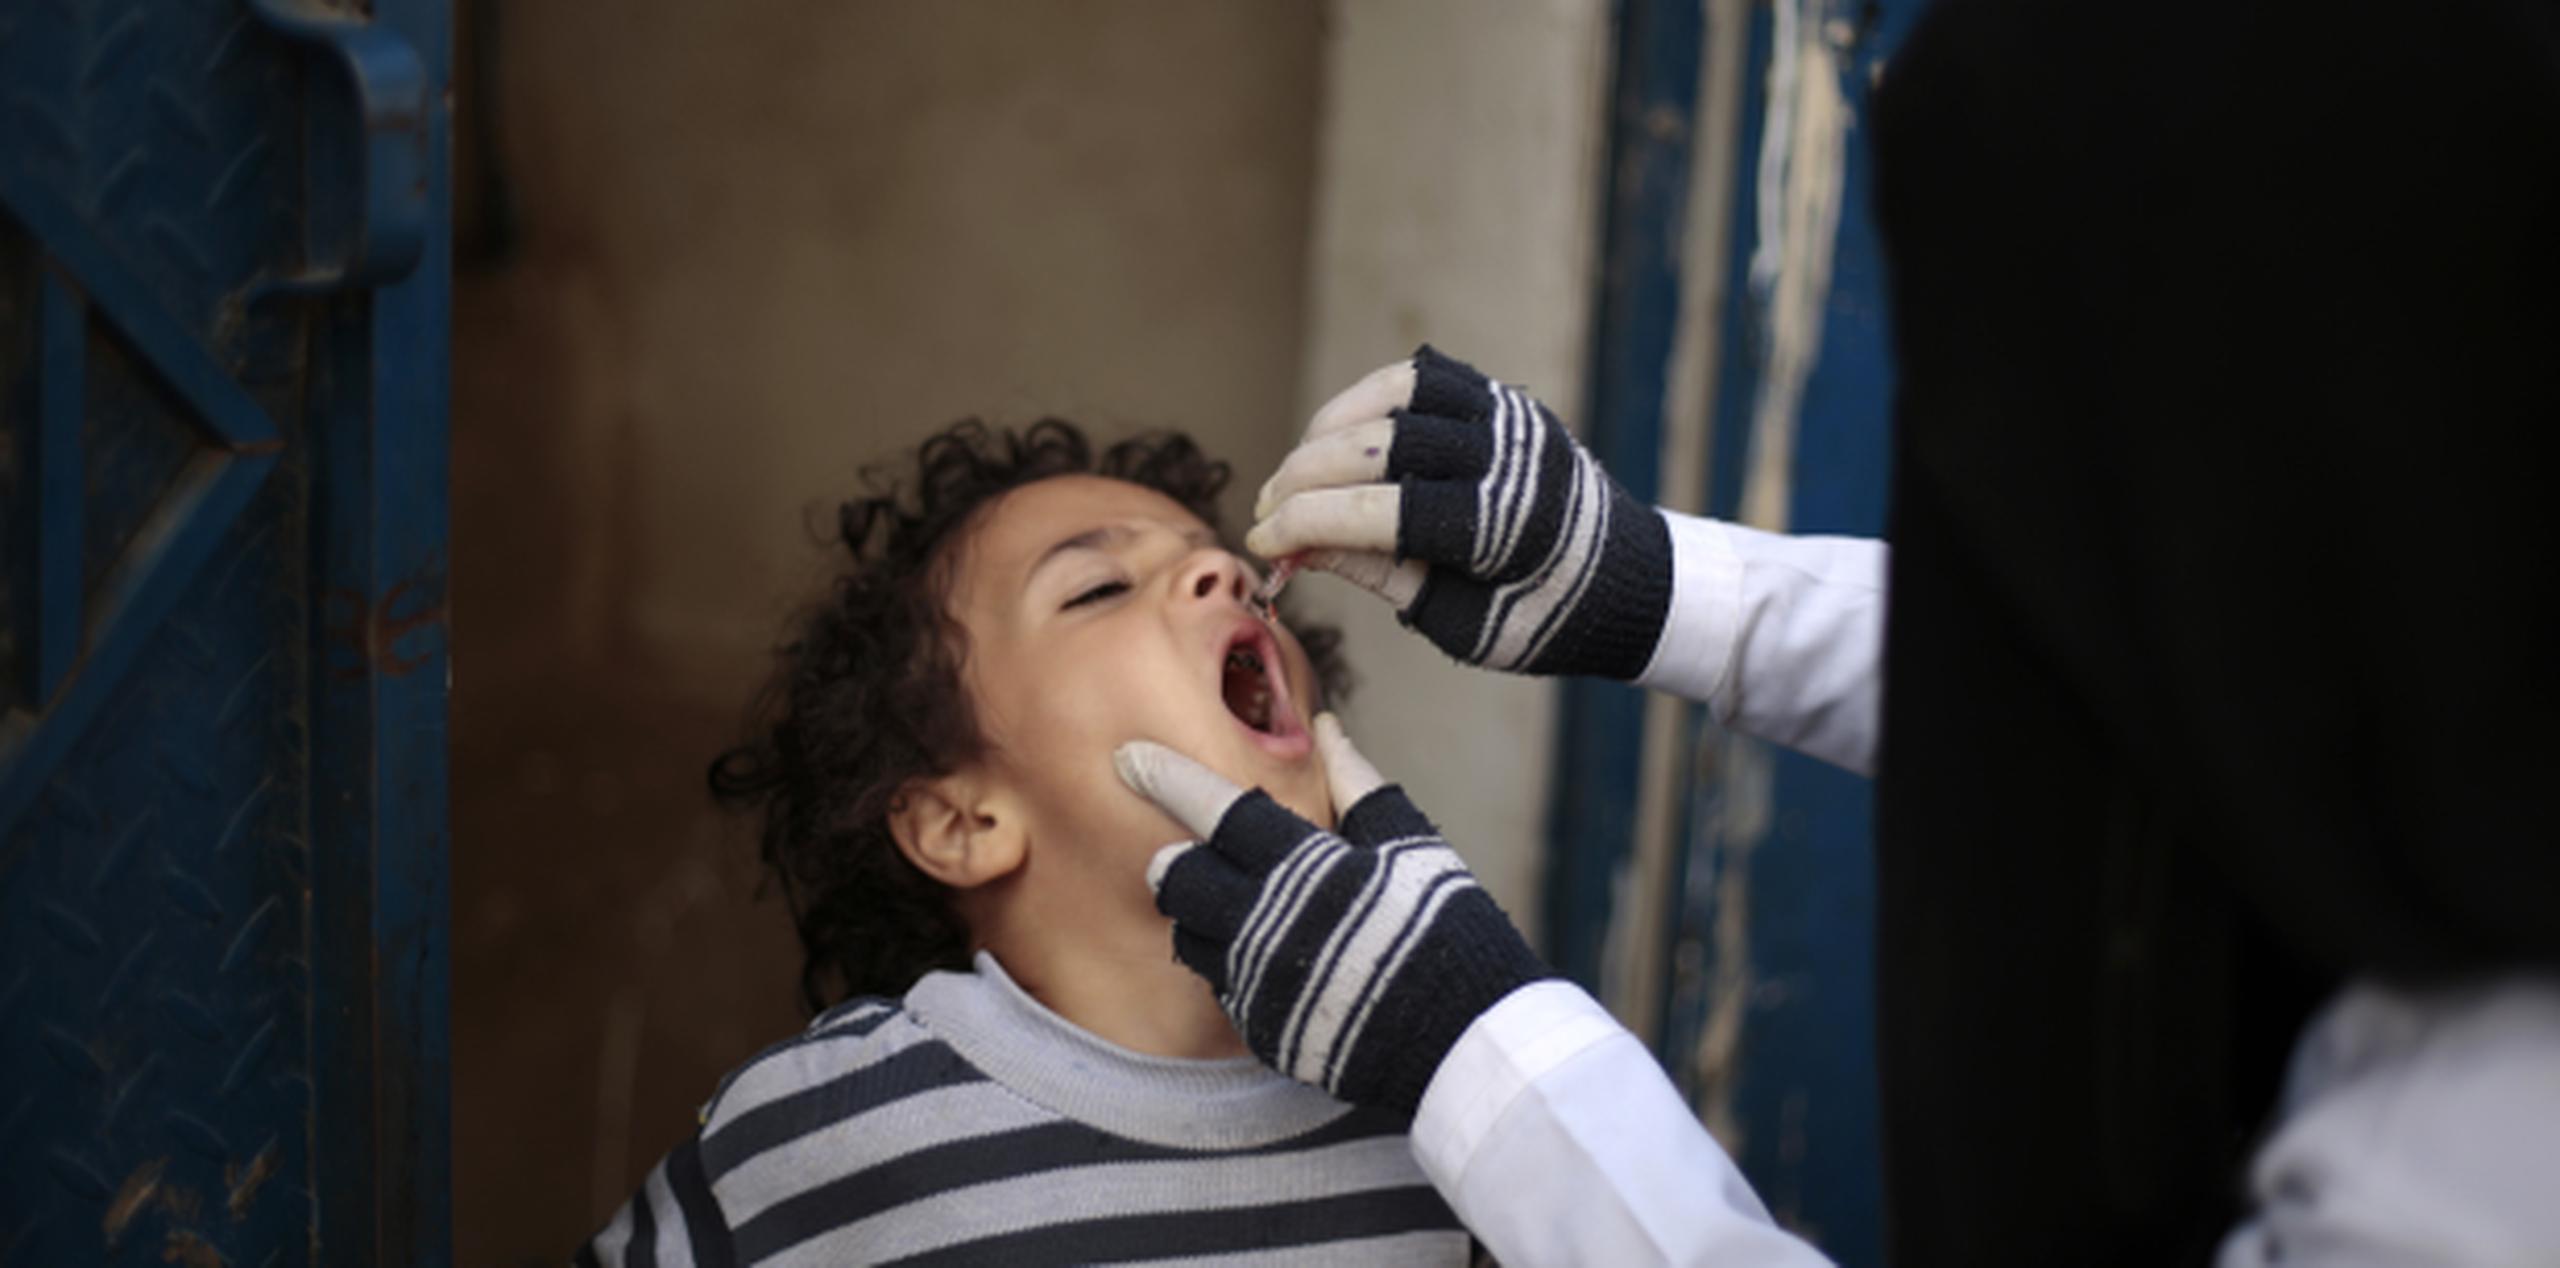 Trabajadores de salud están suministrando la vacuna contra la polio tanto en las zonas bajo control de los rebeldes hutíes como en zonas bajo control del gobierno reconocido internacionalmente. (AP/Hani Mohammed)
